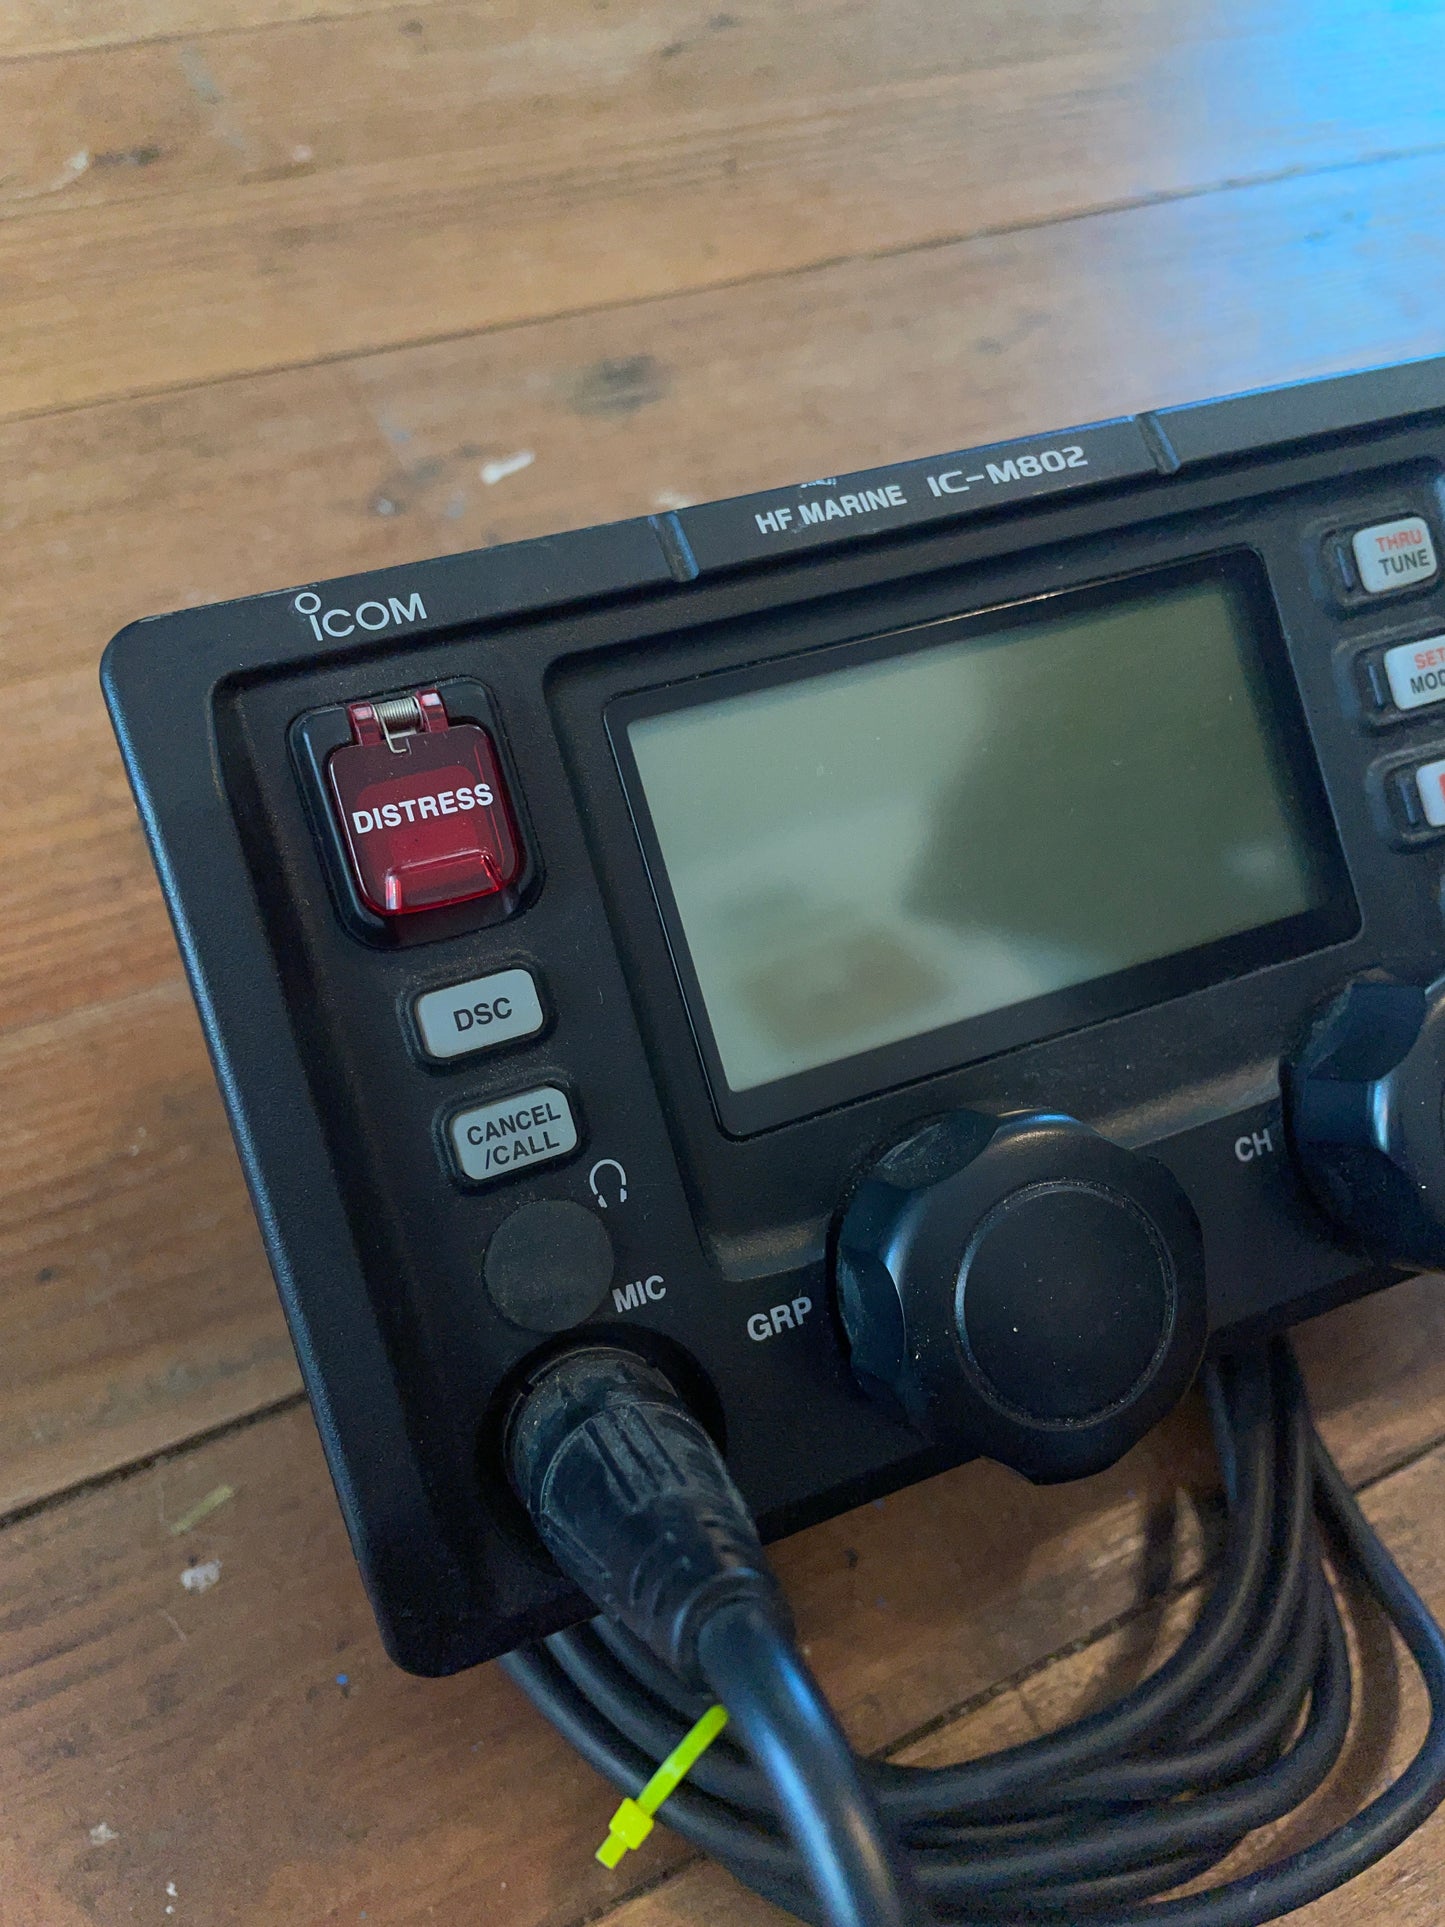 ICOM HF Marine IC-M802 Radio